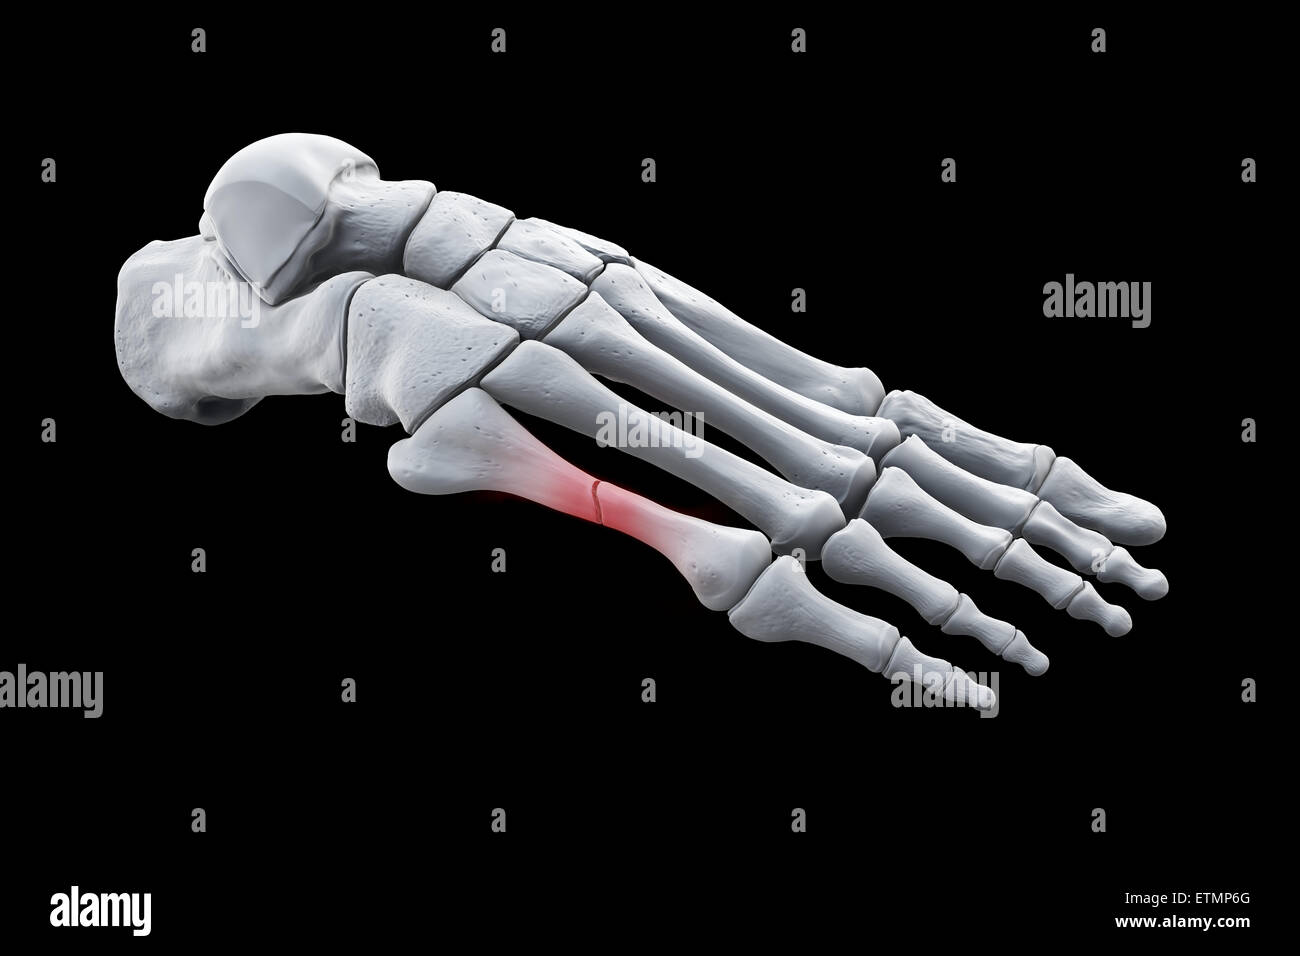 Darstellung der Knochen des Fußes mit einer Pause in einem Mittelfußknochen hervorgehoben. Stockfoto